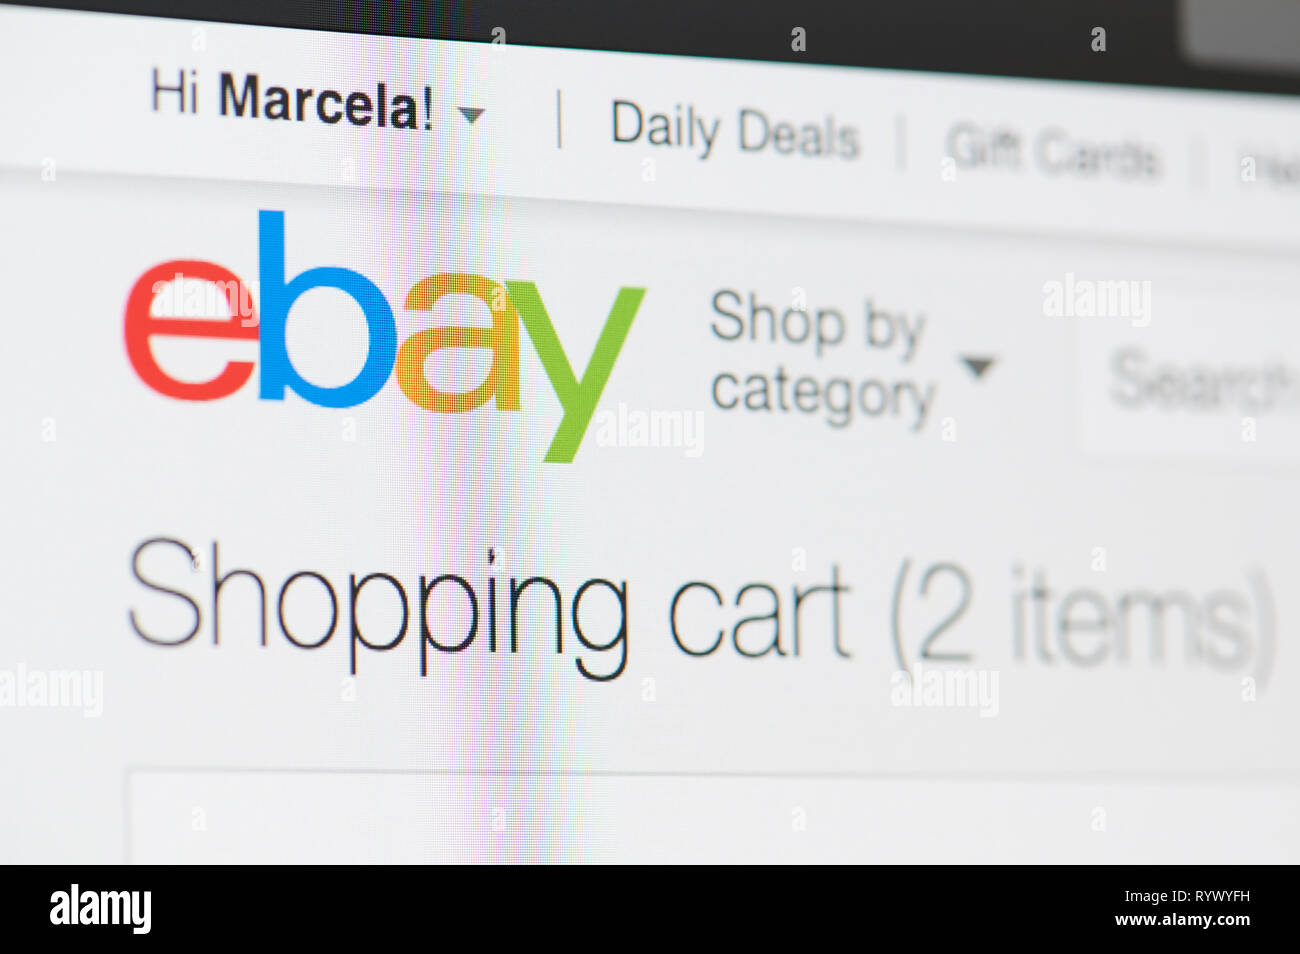 New York, USA - 15. März 2019: Ebay Warenkorb mit Artikeln auf dem Laptop Bildschirm Nähe zu sehen. Stockfoto